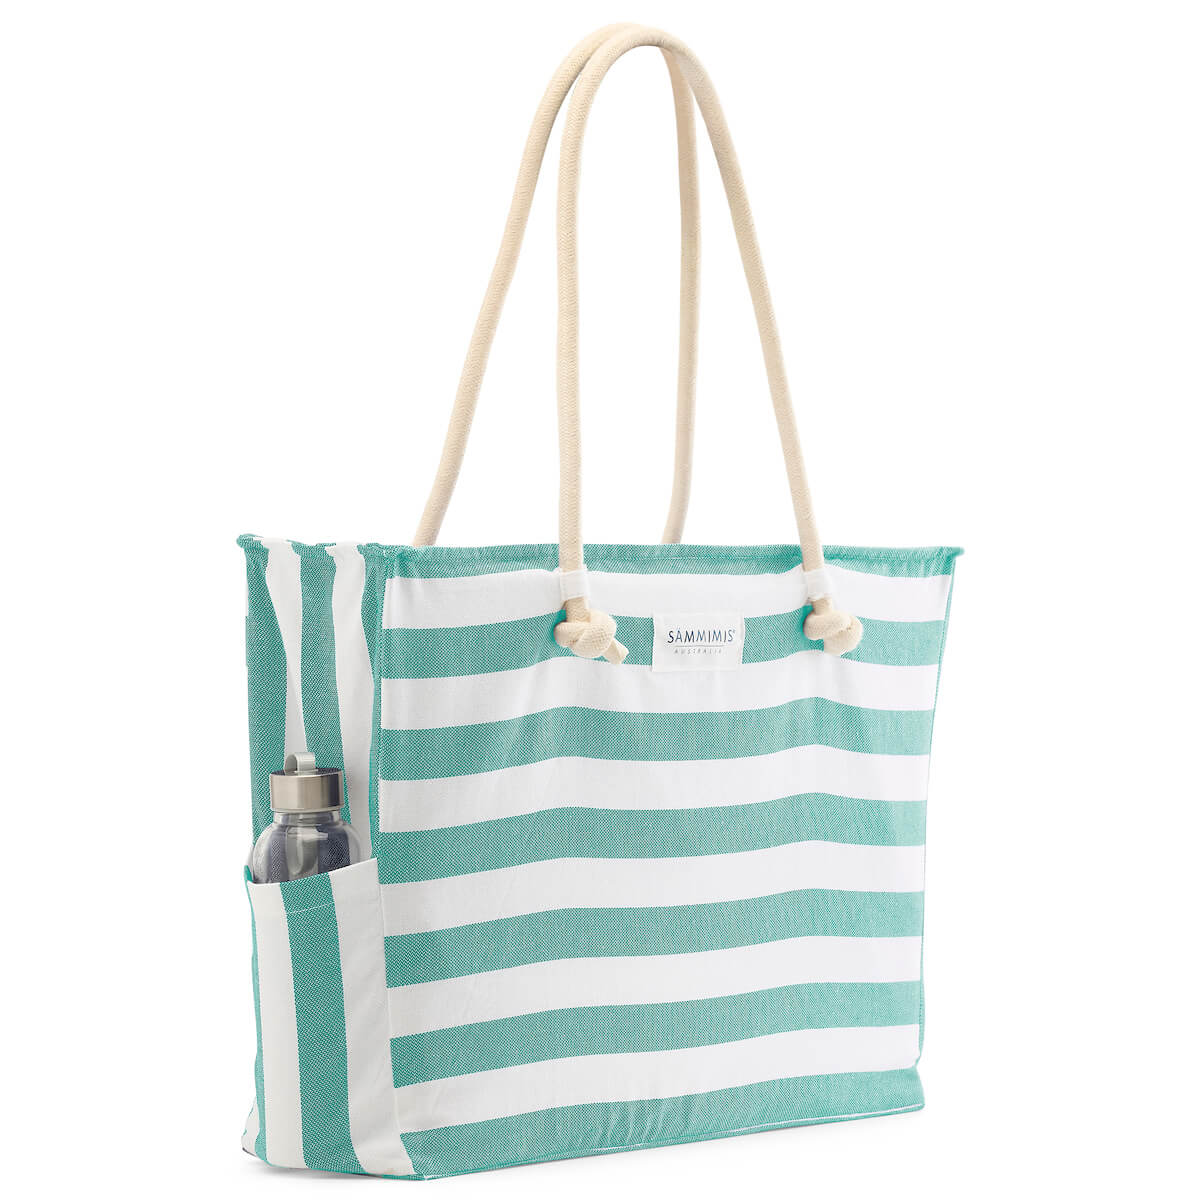 BONIFACIO Jumbo Beach Bag: Sea Green/White